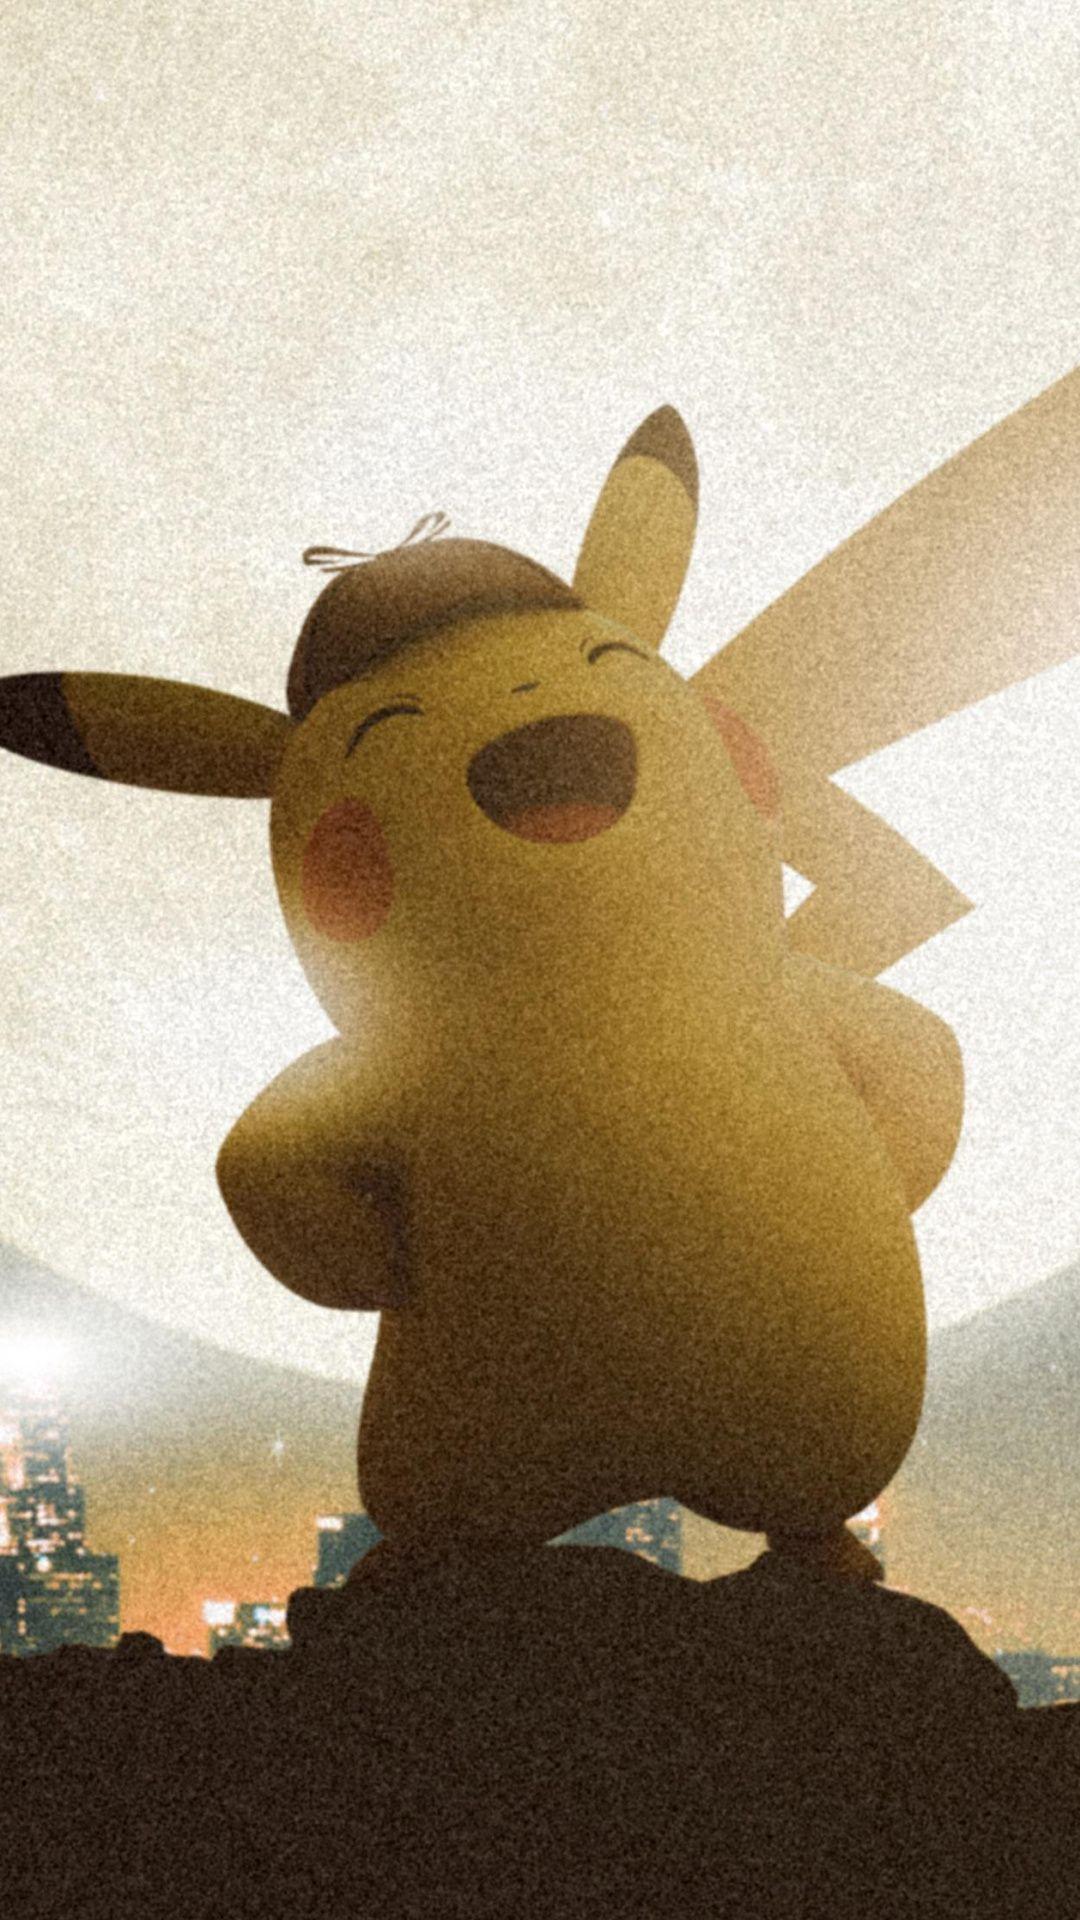 Detective pikachu, POKÉMON Detective Pikachu, movie, 2019